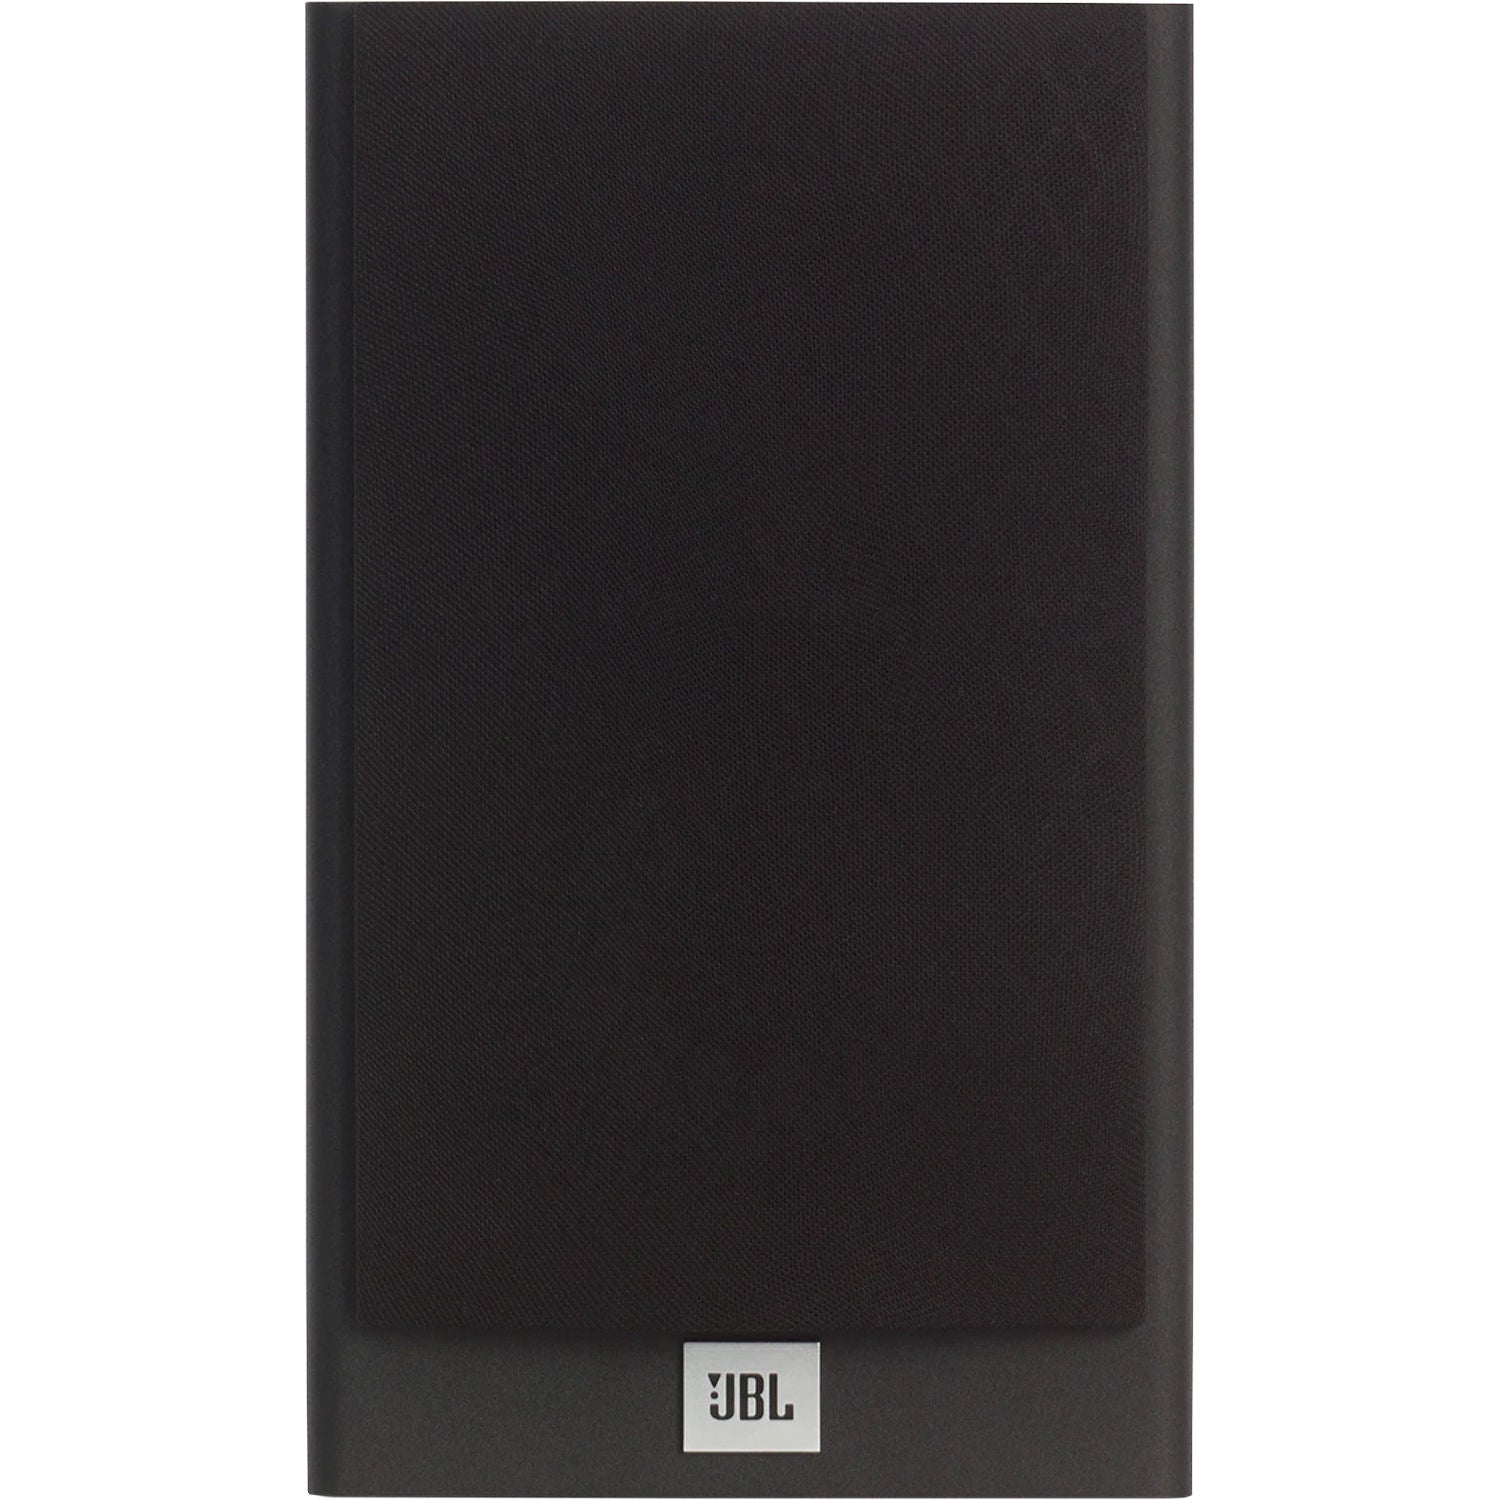 JBL JBLA120BLKAM-Z Stage 120 2-Way Dual 4.5" Woofers 1" Tweeter Bookshelf Speaker - Certified Refurbished